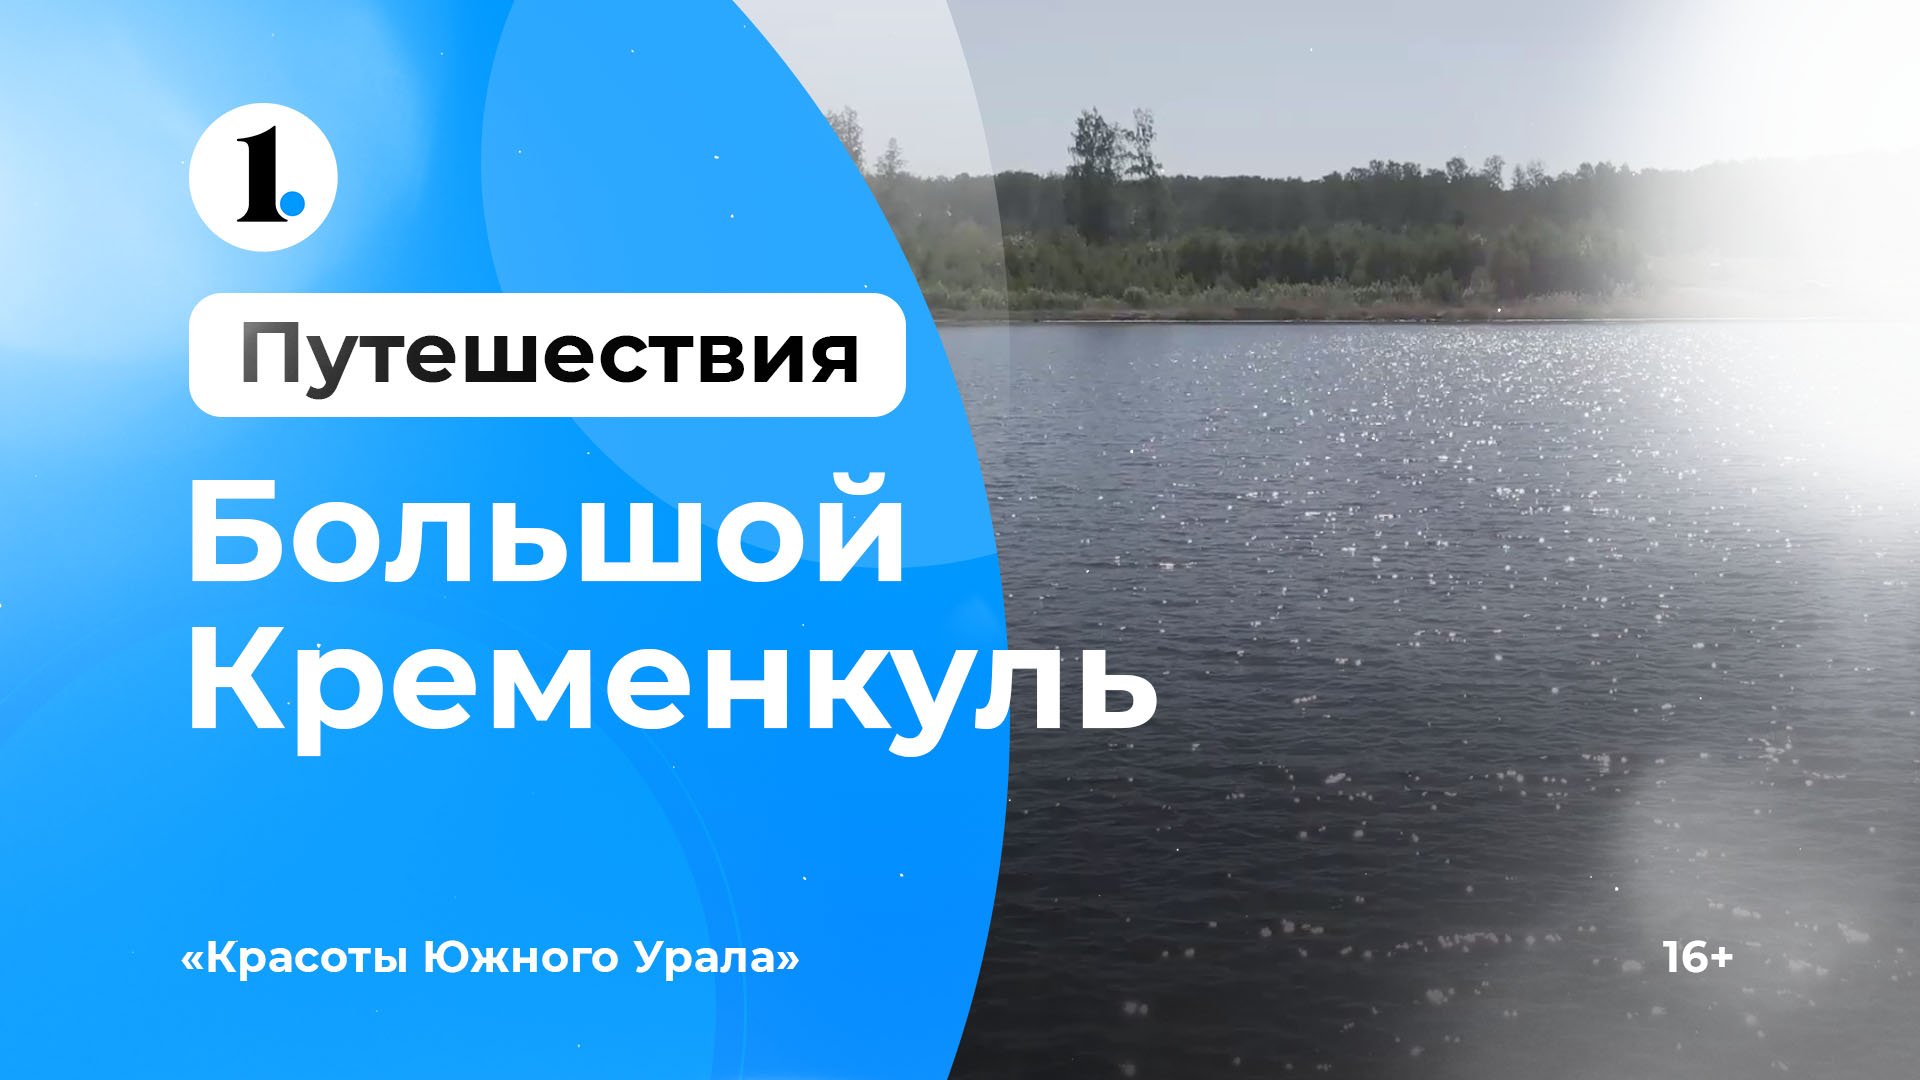 Красоты Южного Урала — озеро Большой Кременкуль